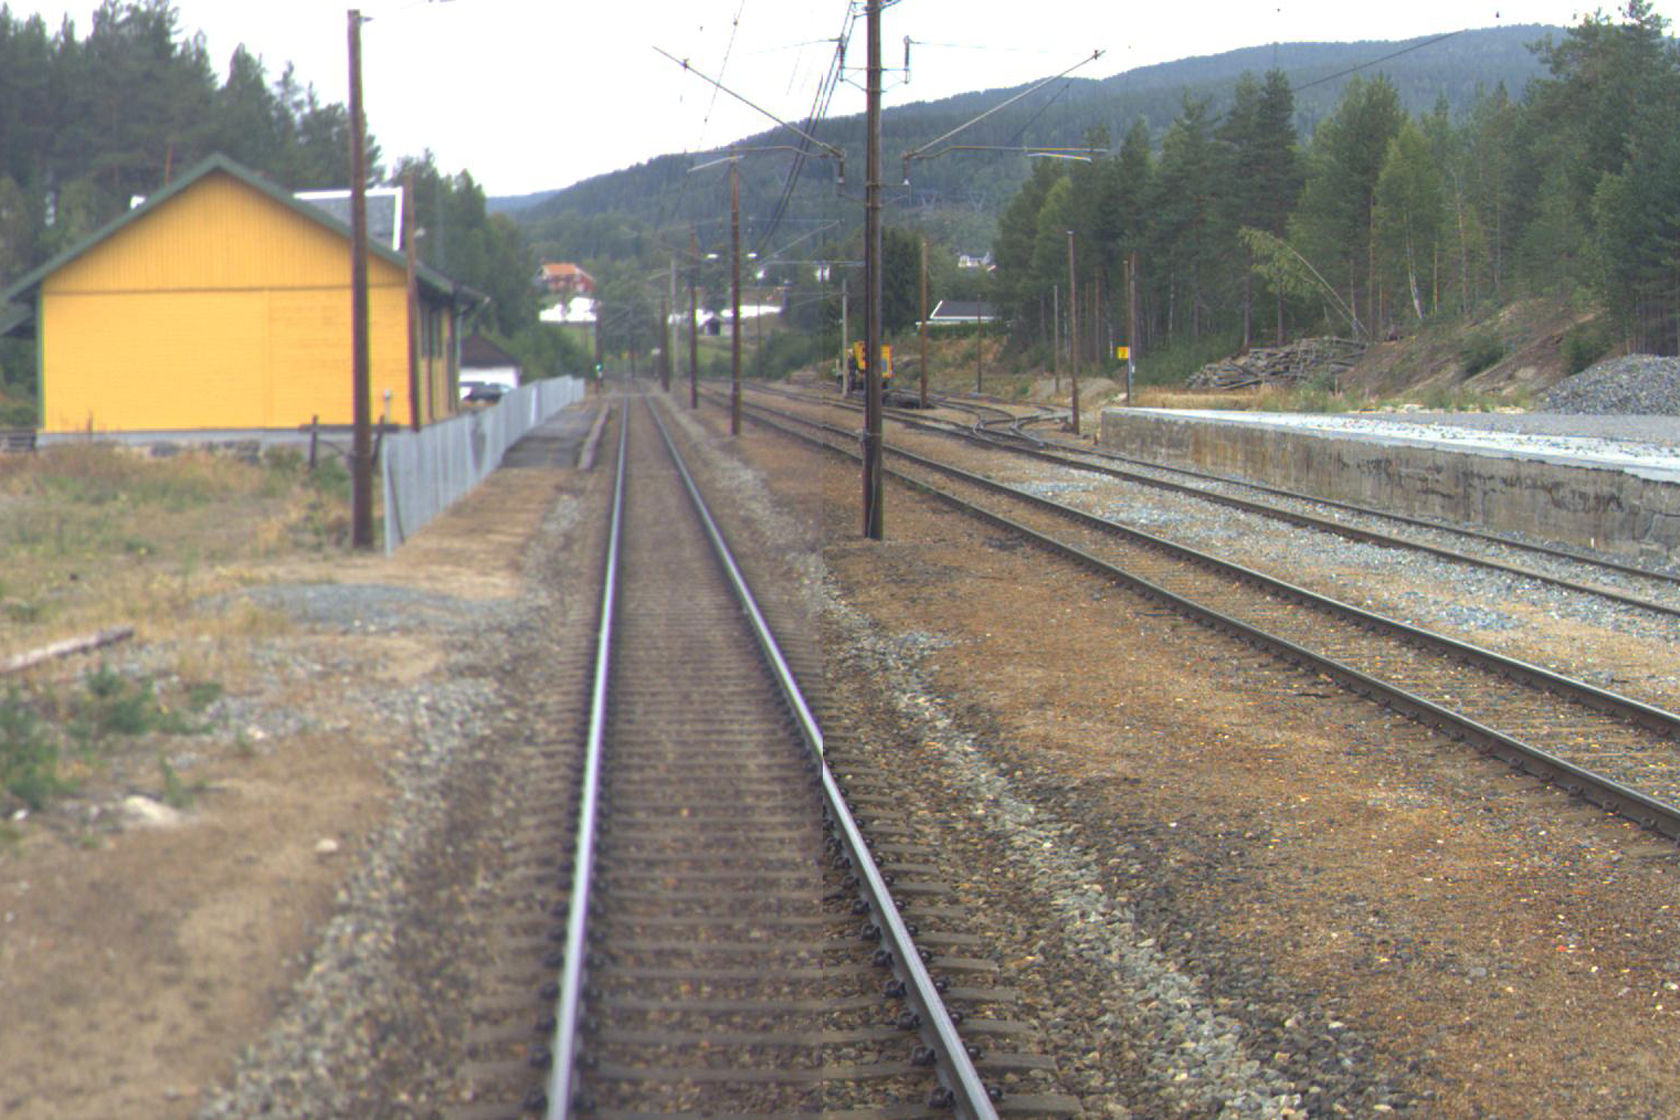 Tracks and building at Sokna station